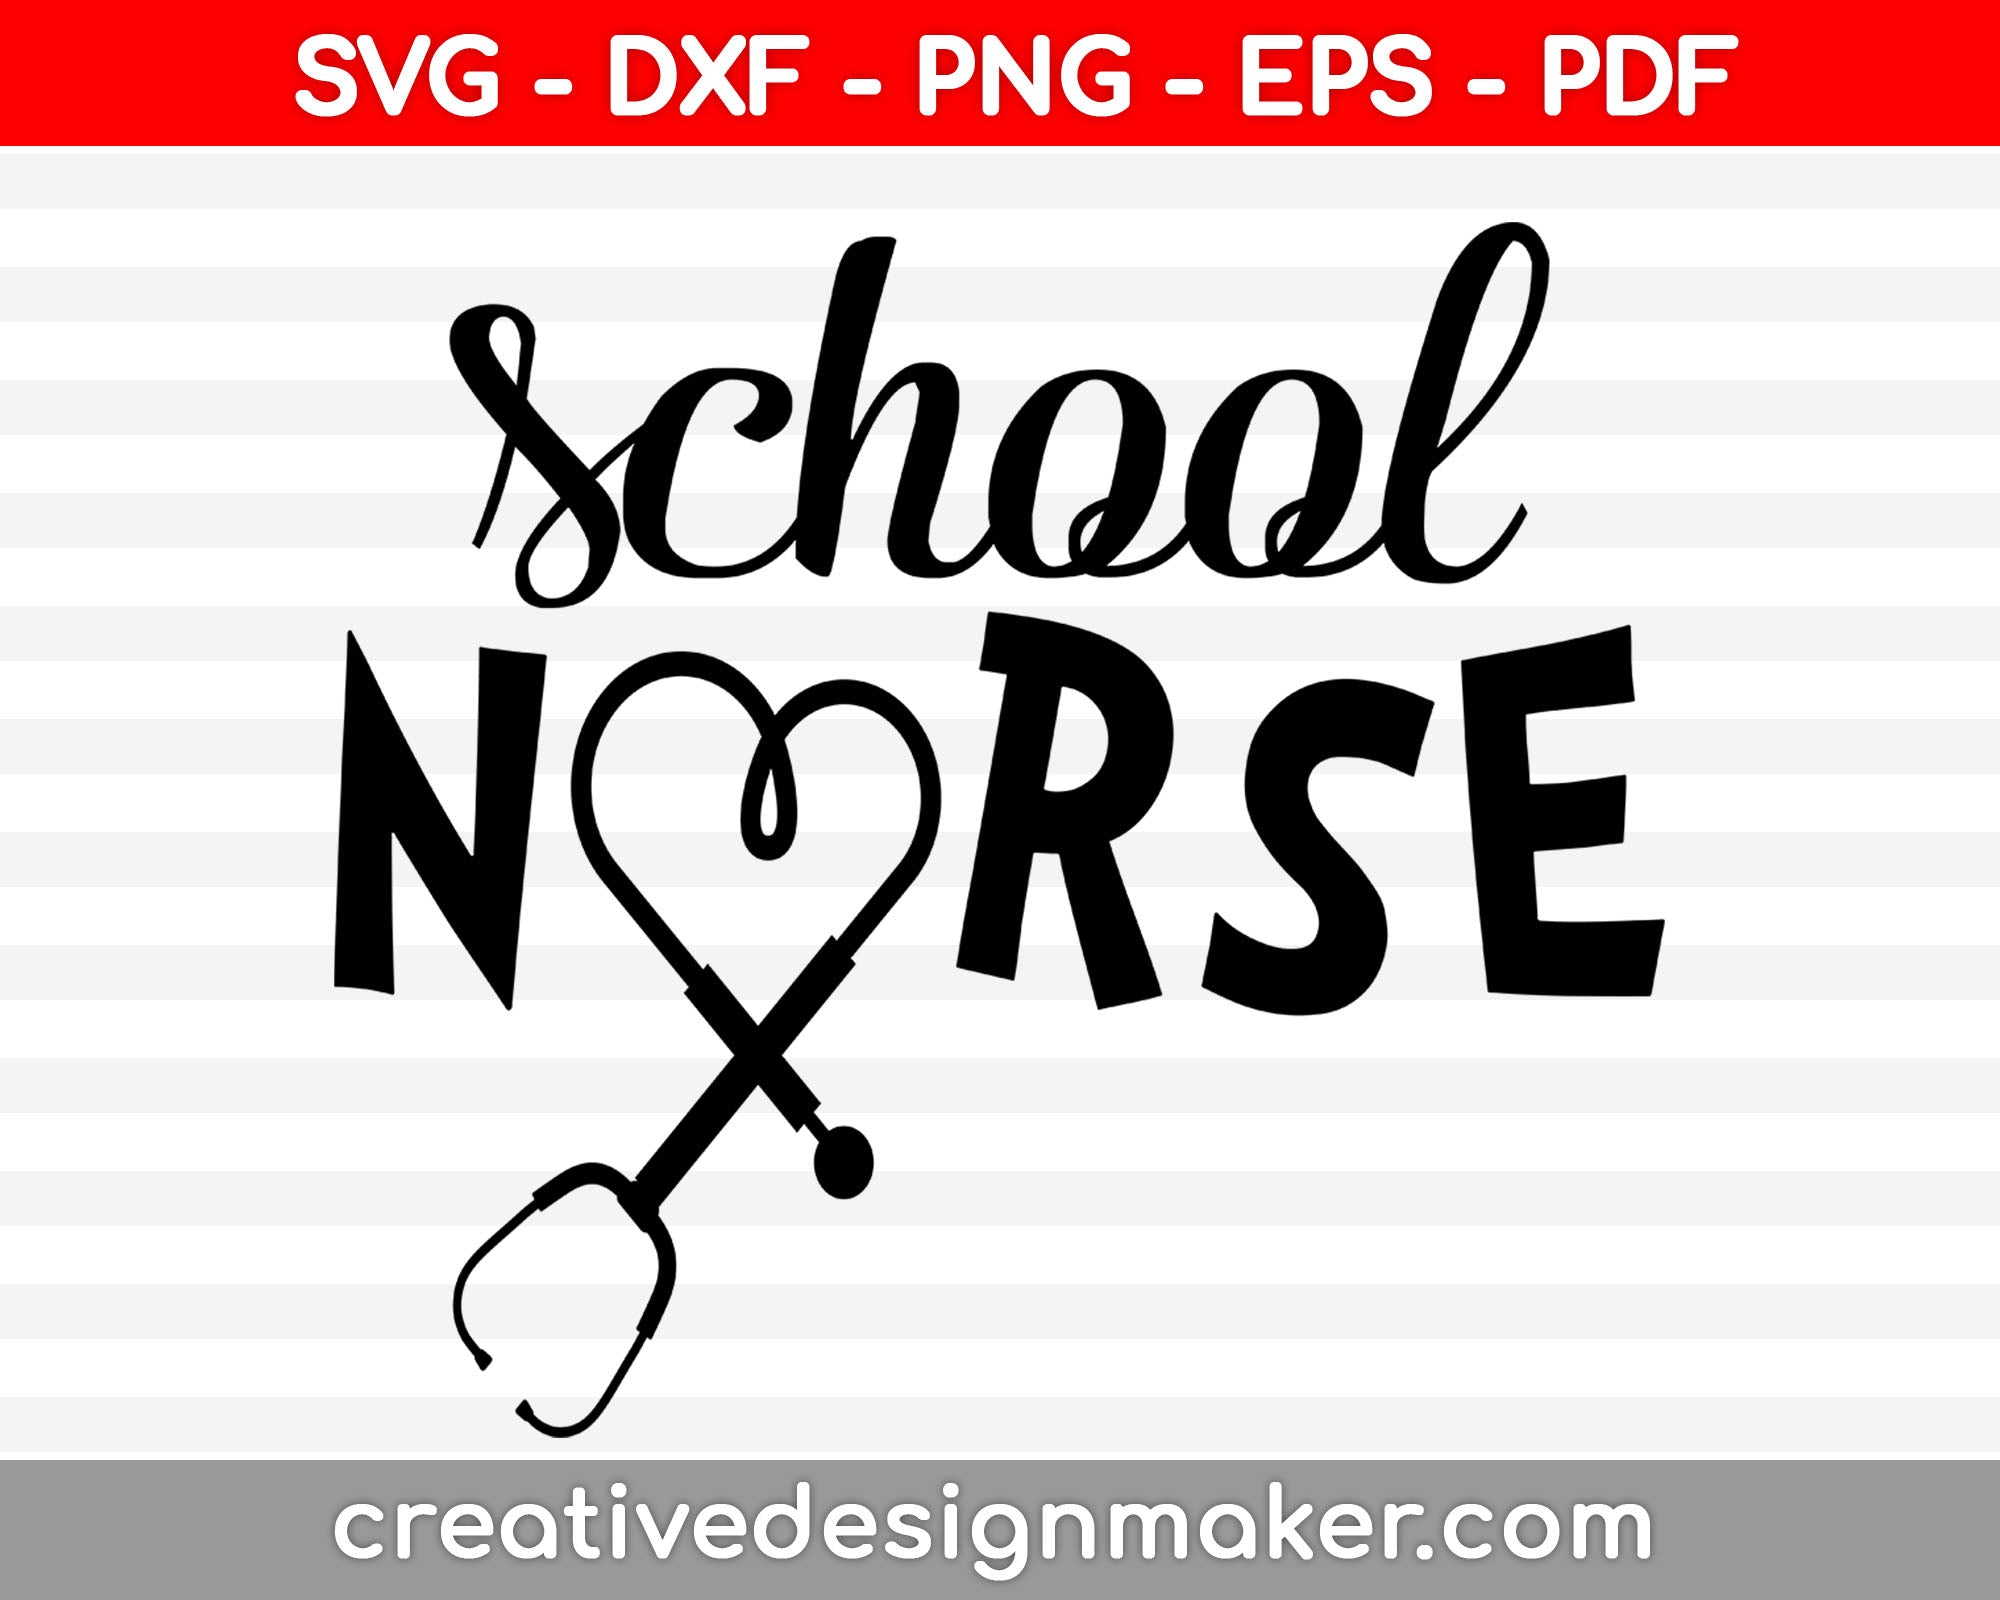 School nurse SVG stethoscope kindergarten pre-k or back to school shirt vector design Svg Dxf Png Eps Pdf Printable Files